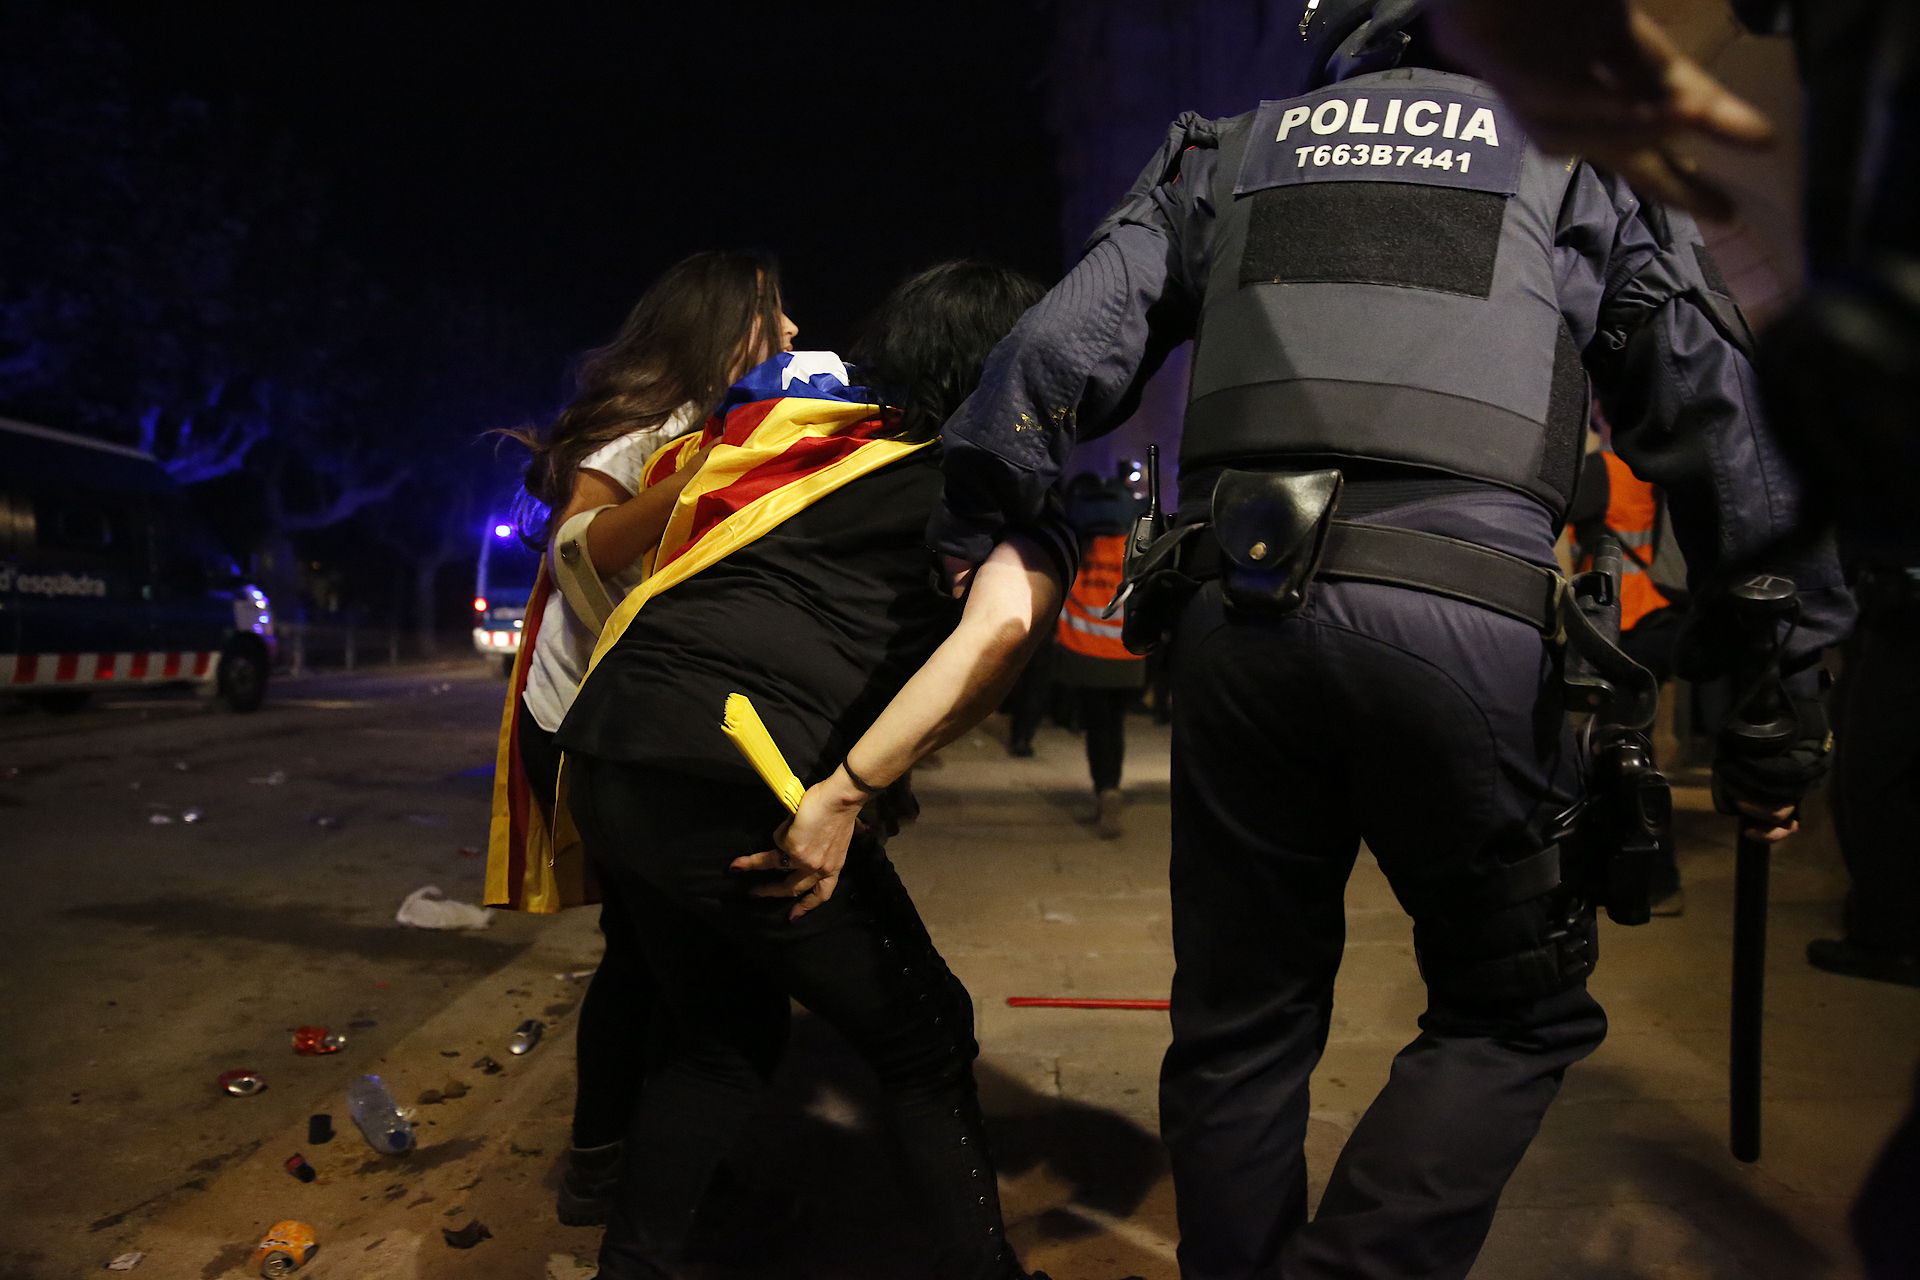 Spain's repression in Catalonia inspires dictatorships, concludes UNPO report